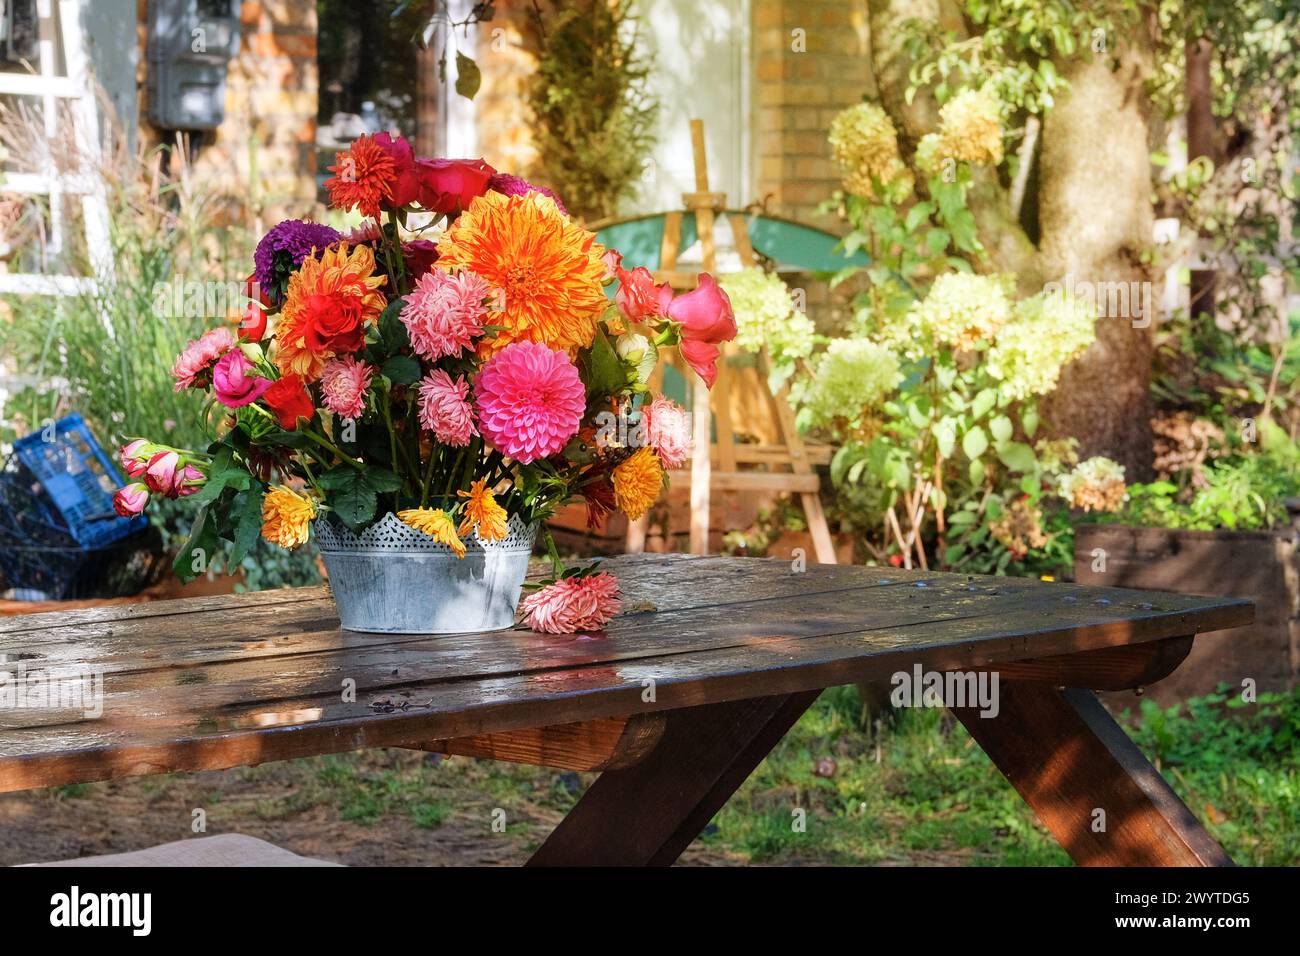 Rosen, Astern, Dahlien im Apfelgarten auf einem Holztisch. Floristisches Design. Blumen an sonnigem Tag. Landleben. Sonnig. Stockfoto